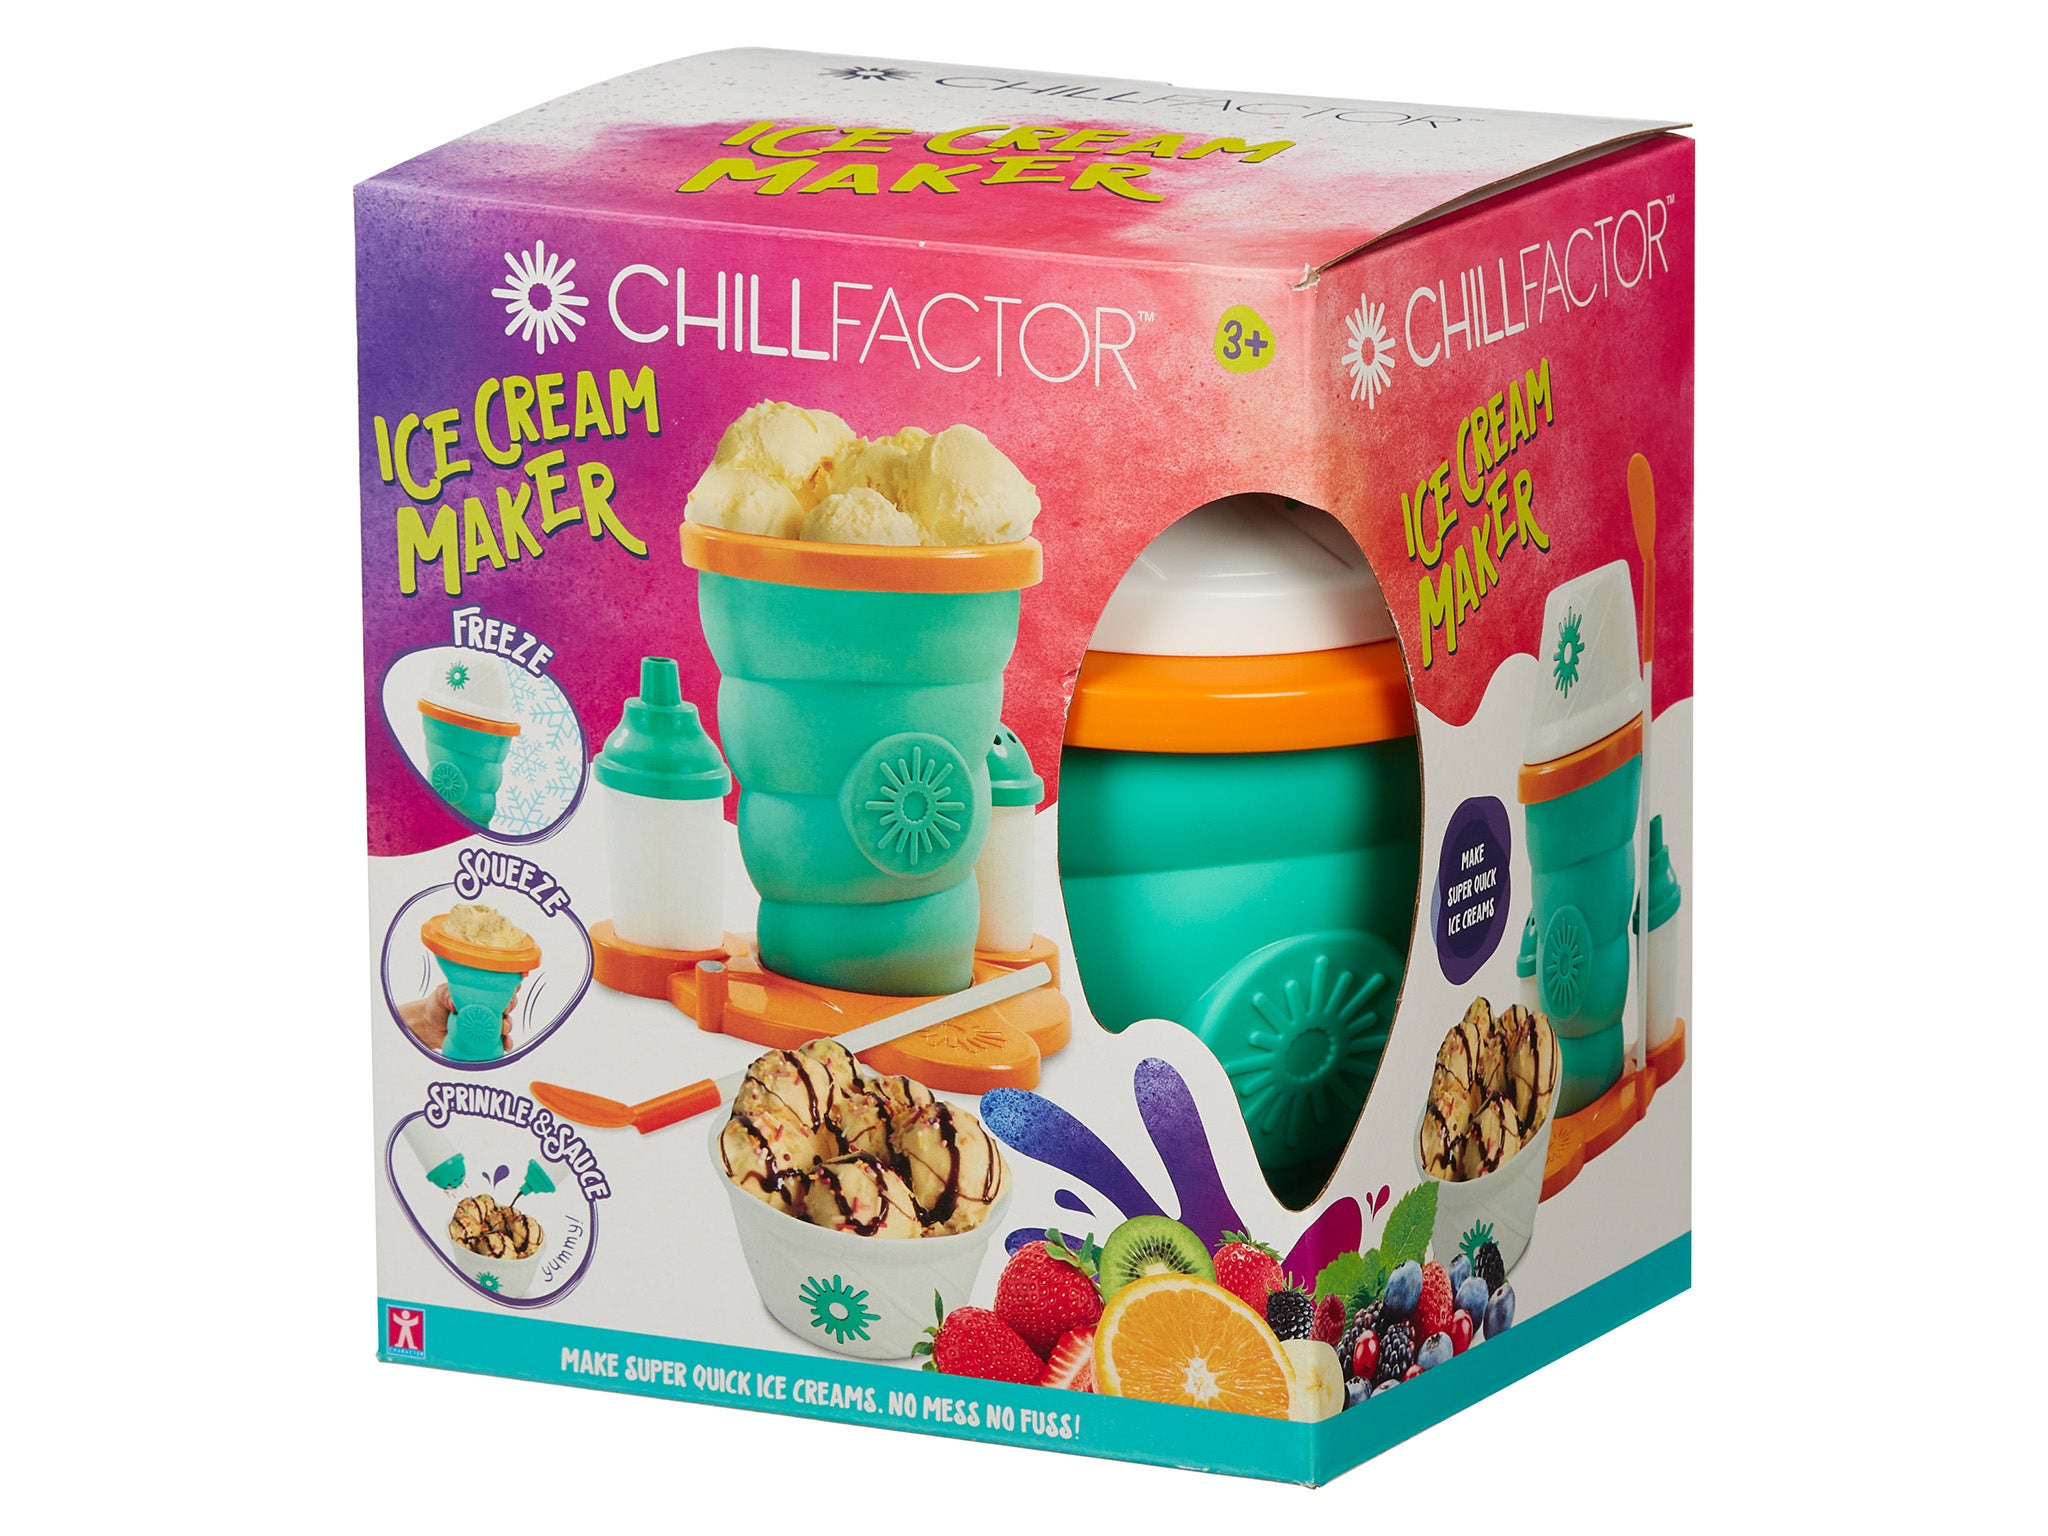 Chill factor ice cream maker